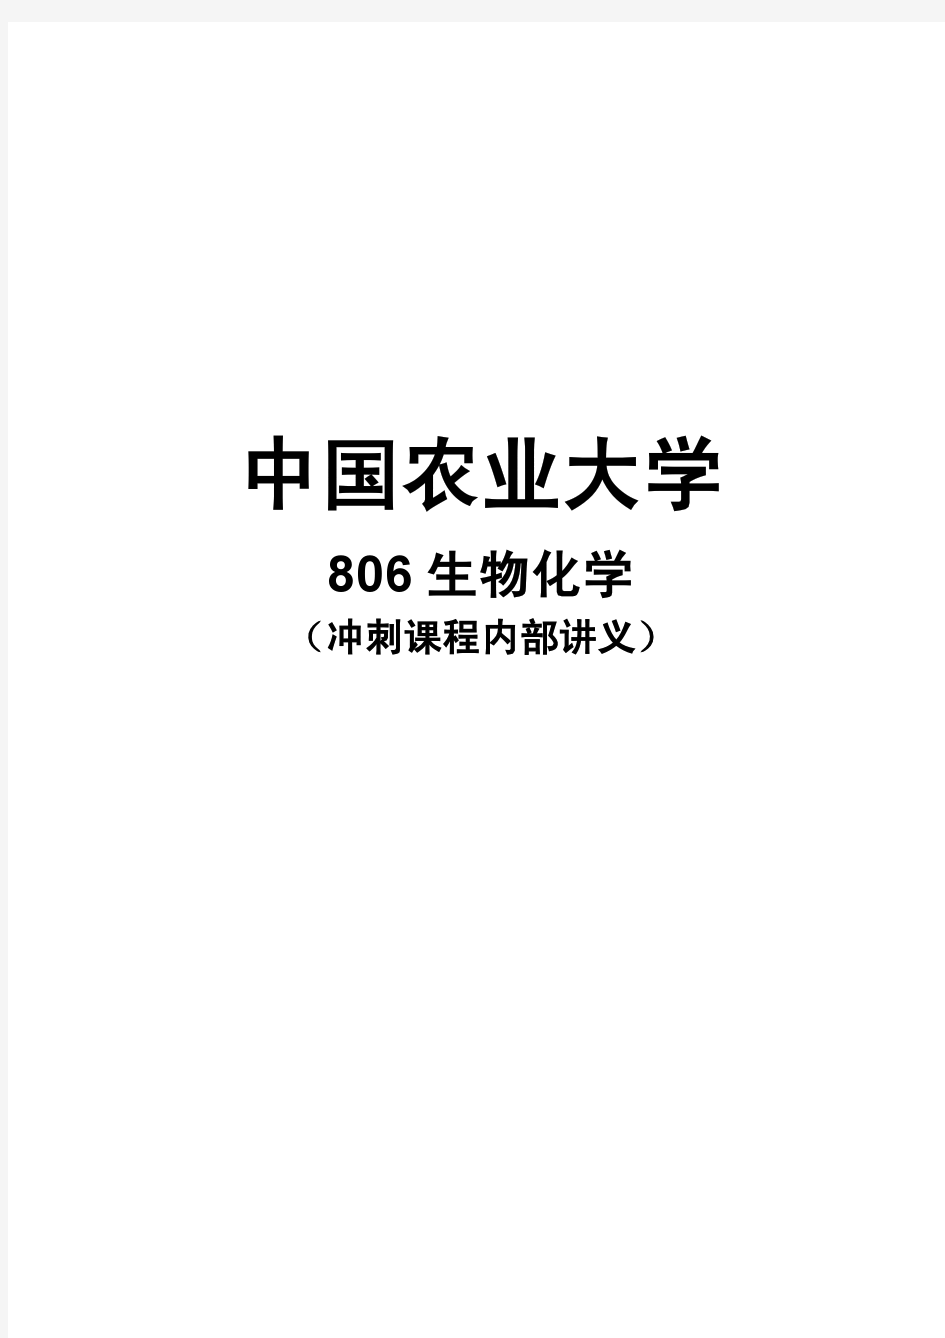 中国农业大学806生物化学2011模拟试题3套及答案(含讲义)